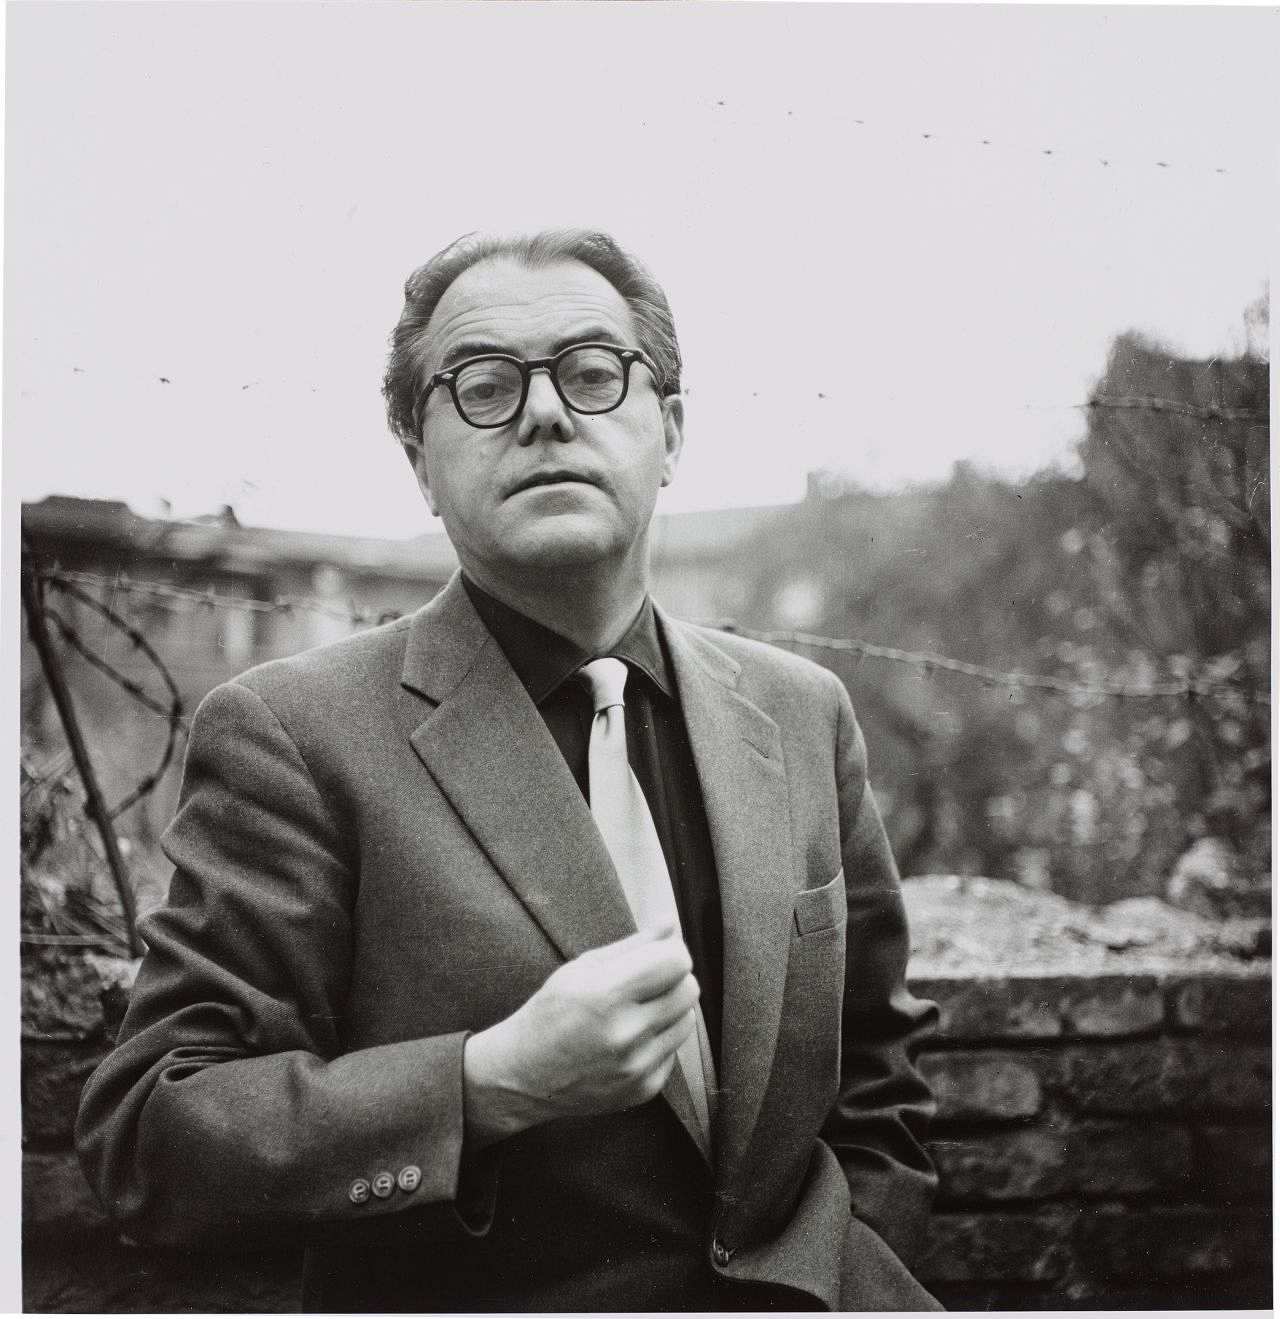 Porträtfoto des Schriftstellers Max Frisch, um 1960